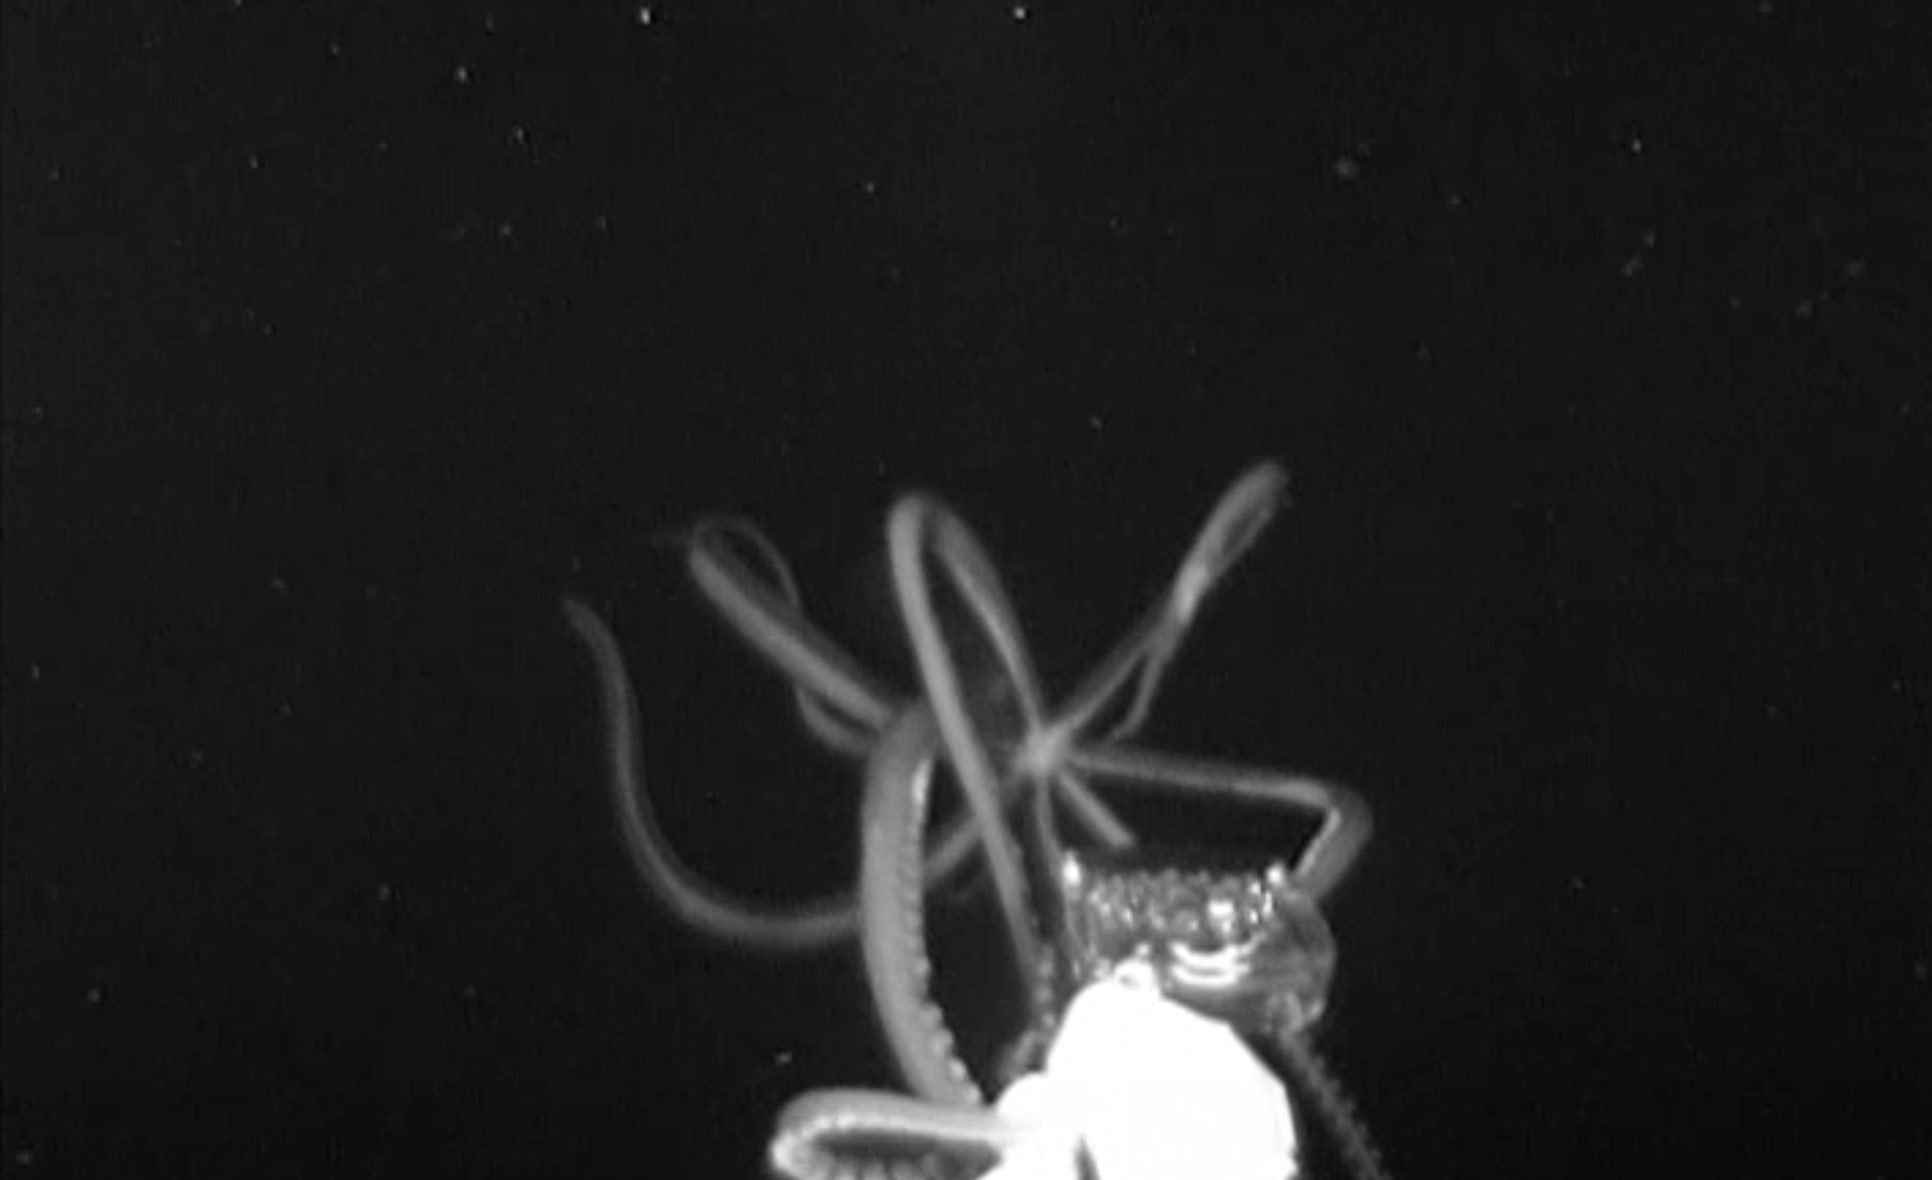 Die Tentakel des Tintenfischs umspielen das neuartige Kamerasystem.